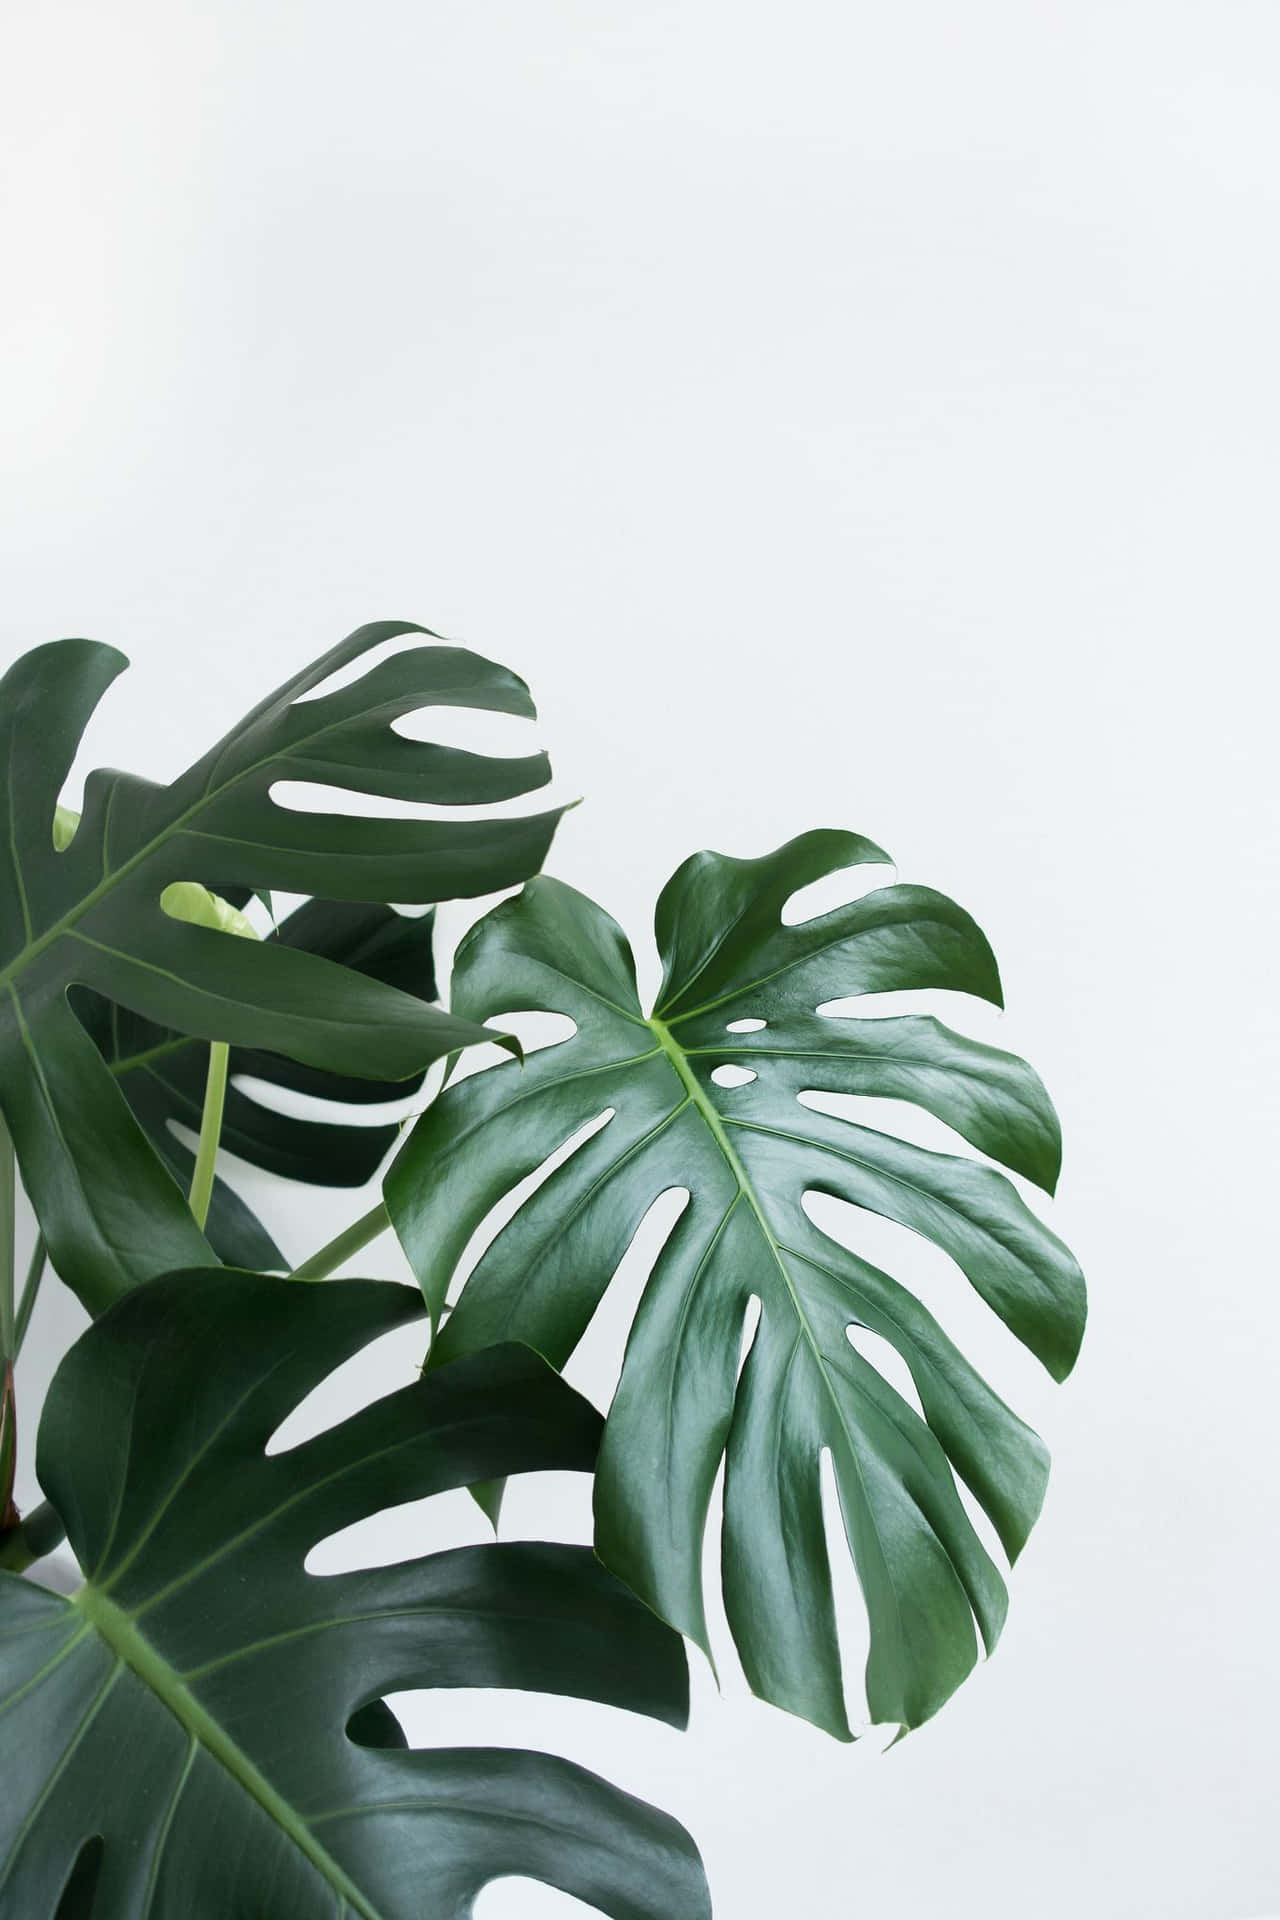 Einegroße Pflanze Mit Großen Blättern Auf Einem Weißen Hintergrund Wallpaper